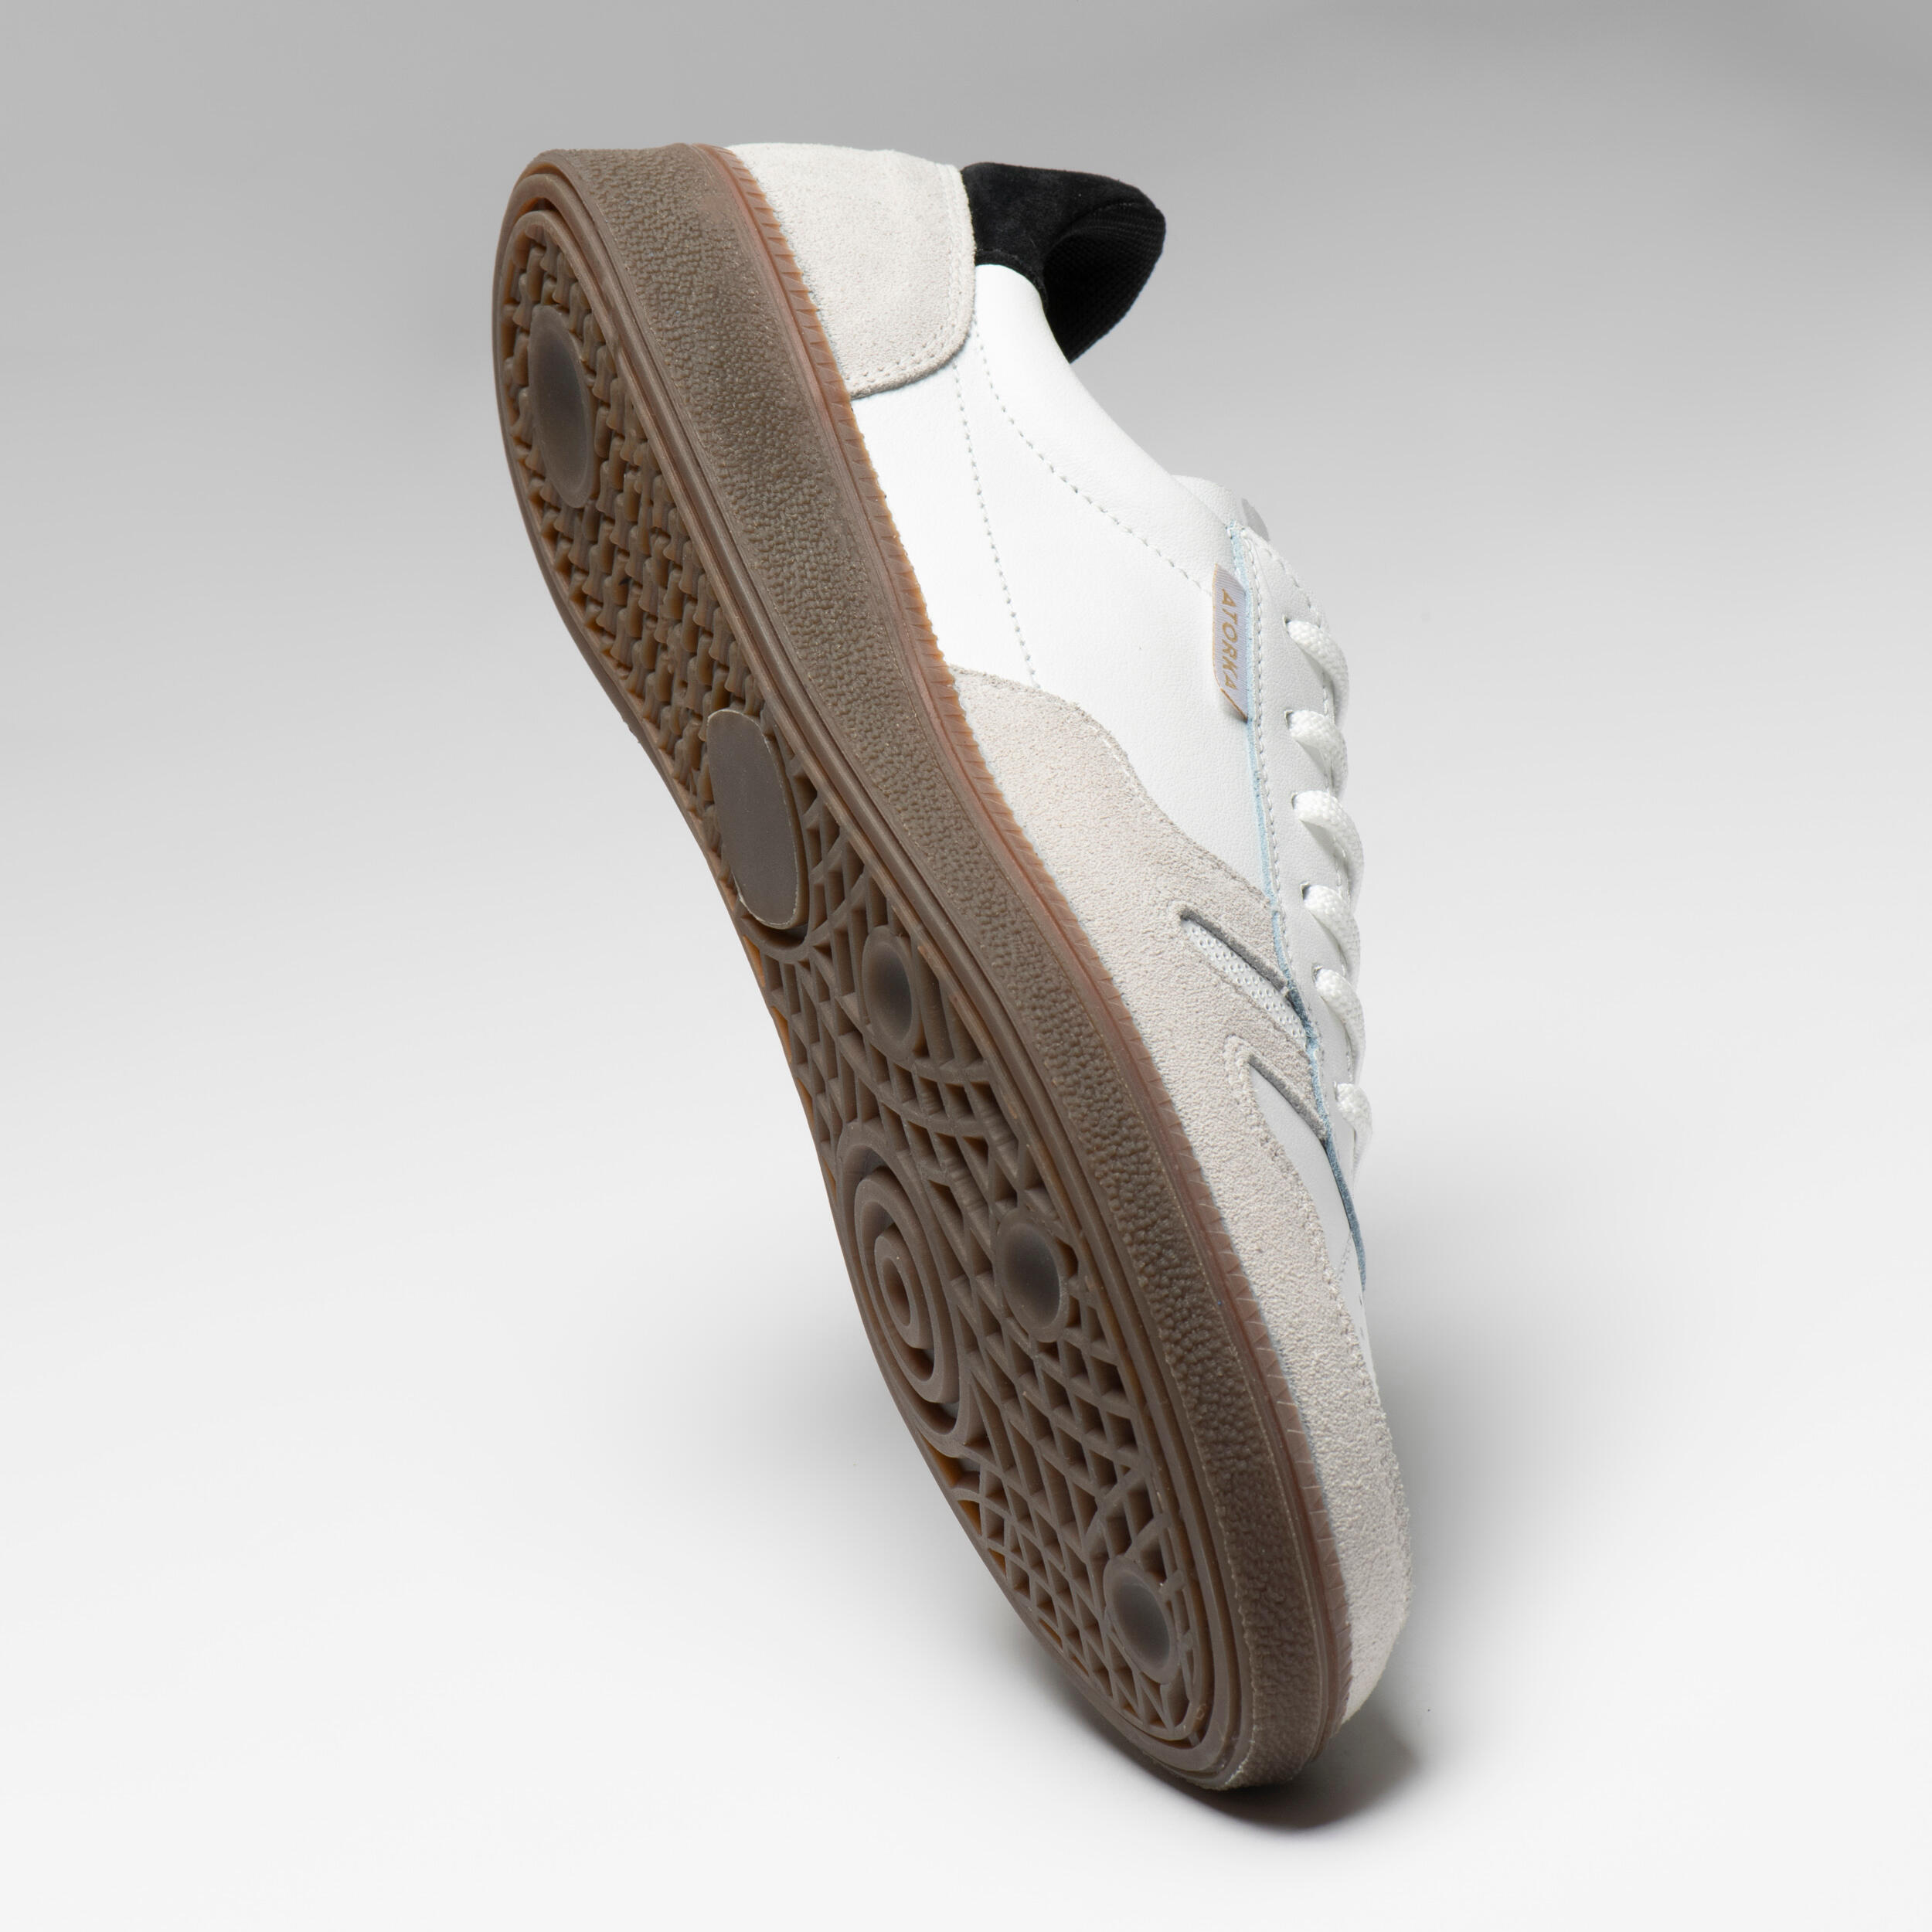 Men's/Women's Handball Goalkeeper Shoes GK500 - White/Black 10/20